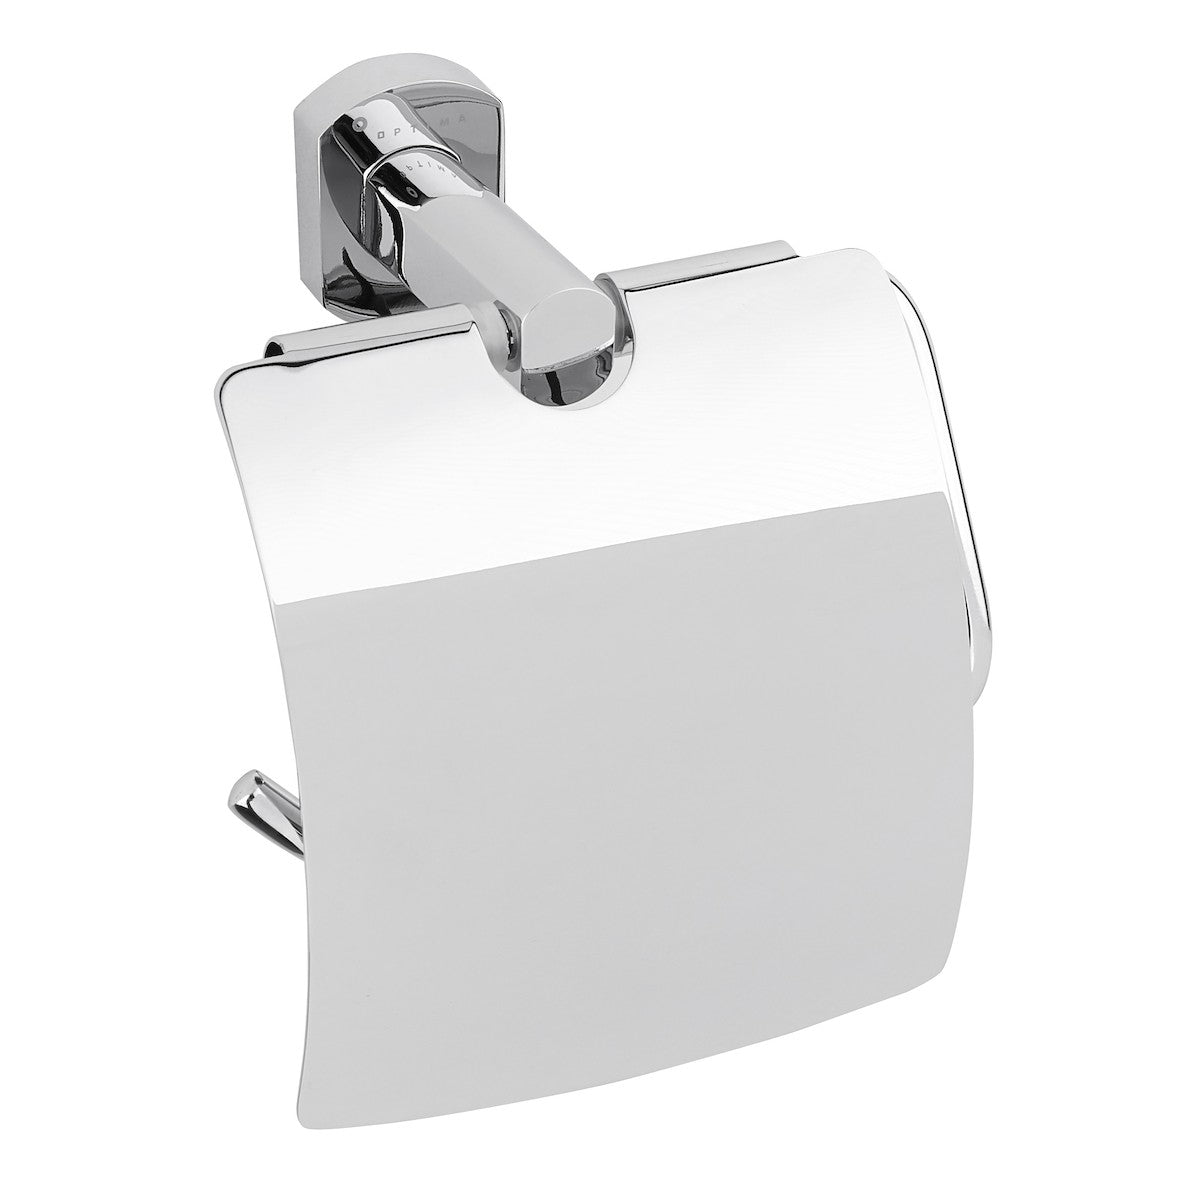 SPI25 SAT Cube Way držalo za toaletni papir